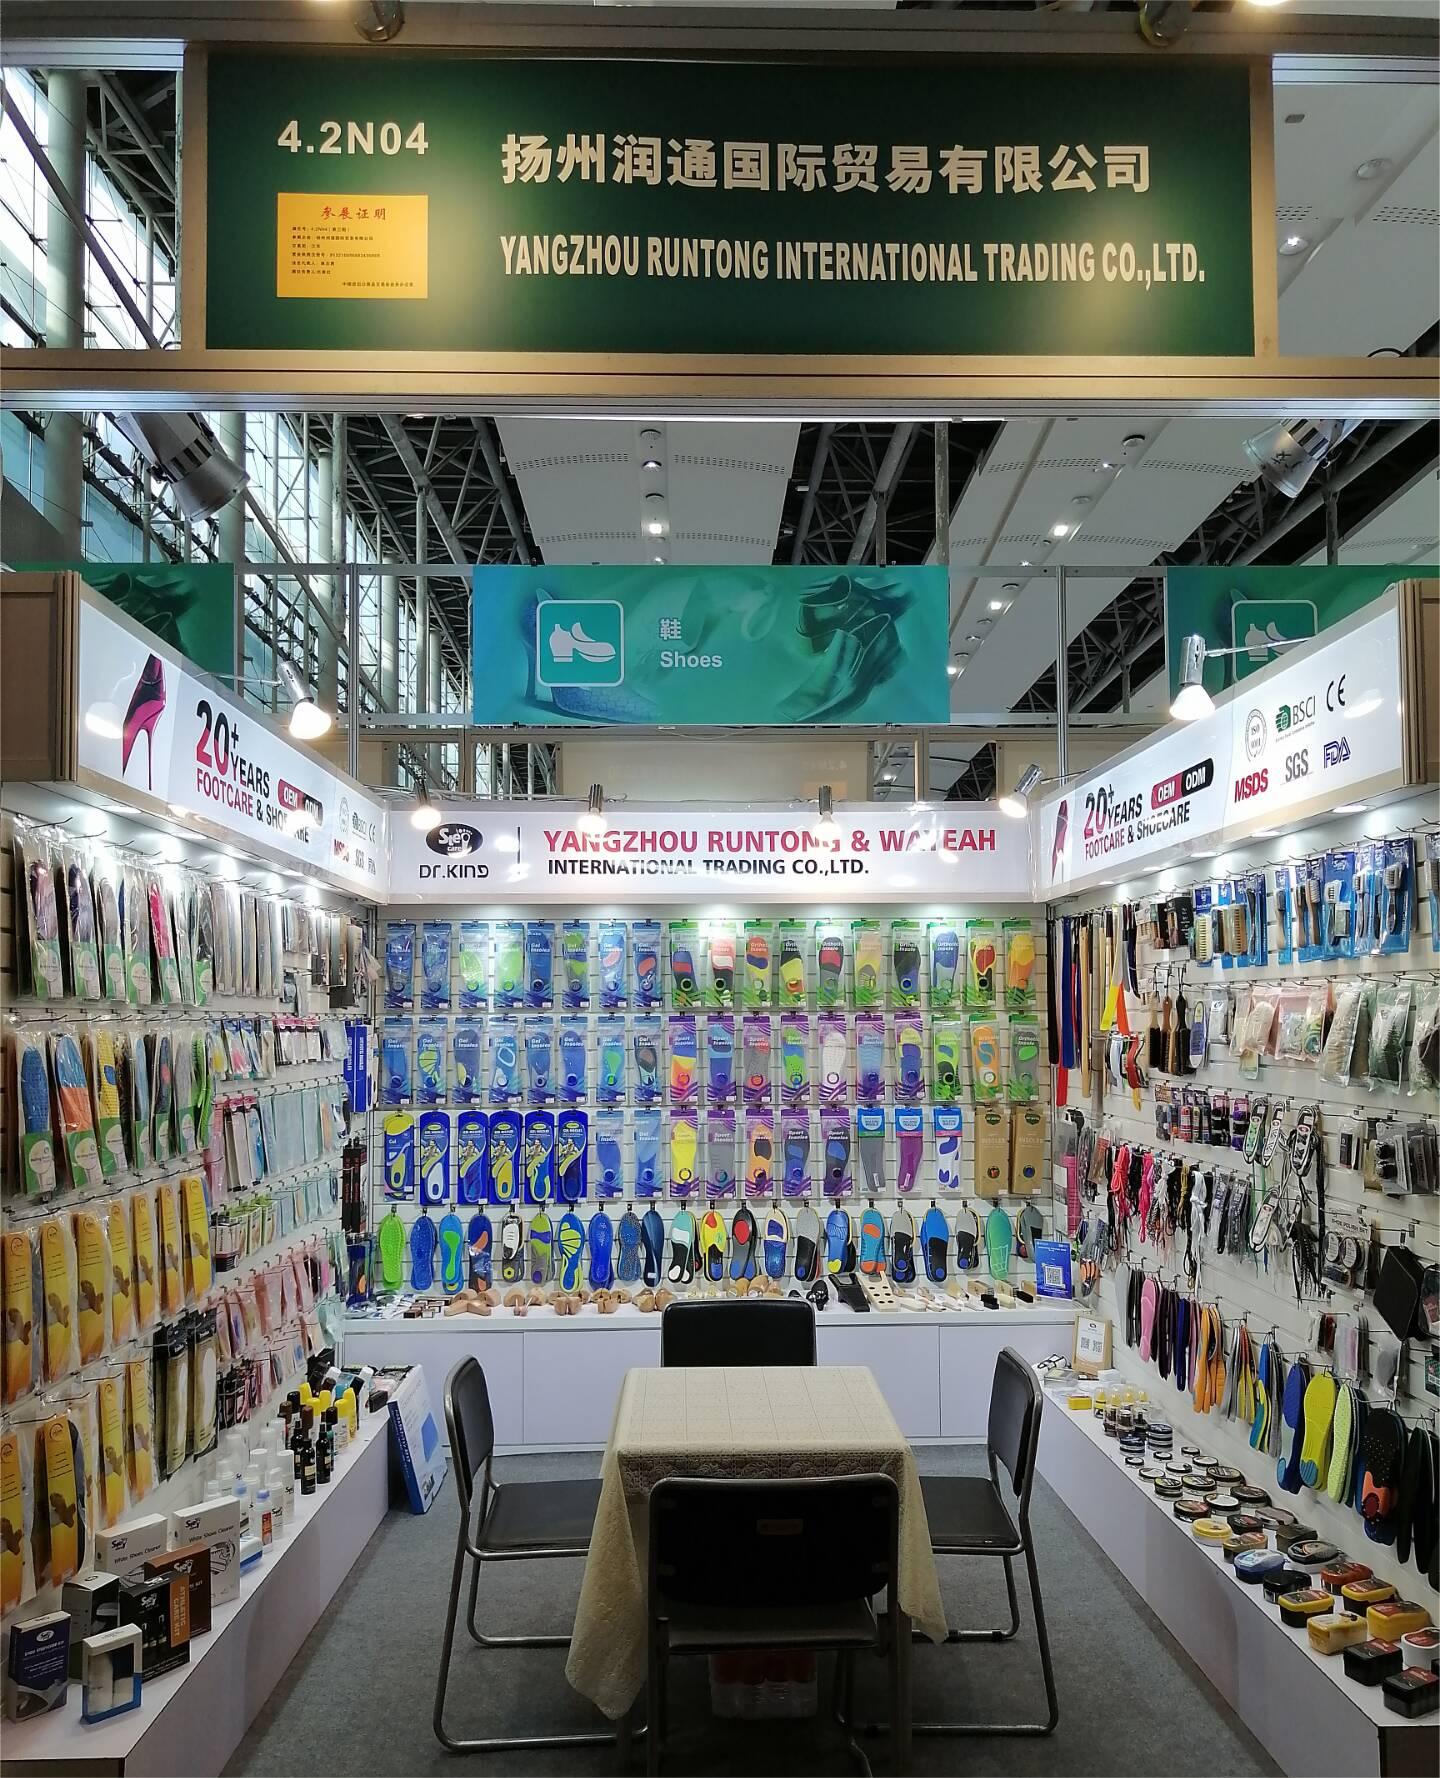 Debutto di successo alla terza fase della Fiera di Canton: gli accessori per calzature dell'azienda Runtong ottengono una risposta entusiasta